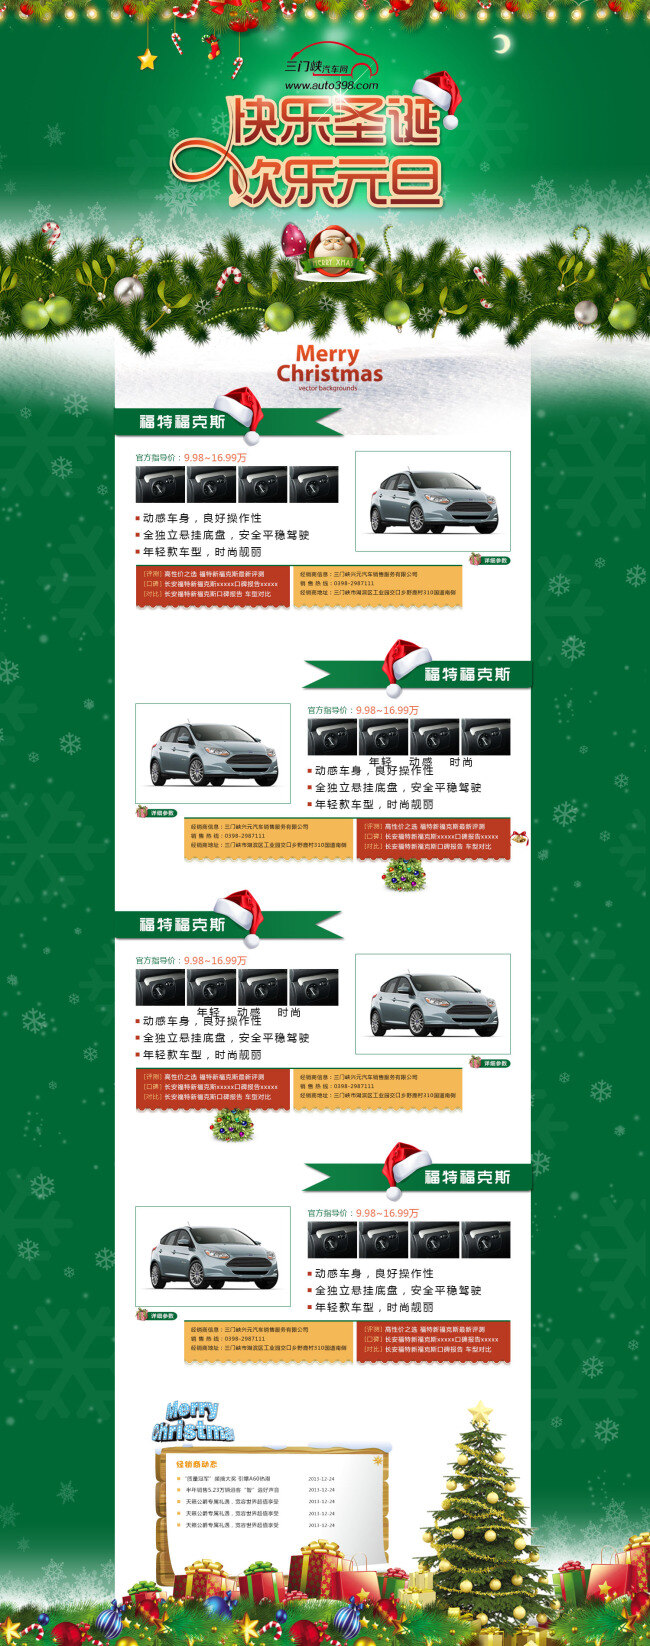 地方 汽车 网站 圣诞节 宣传 网页 海报 首页海报 详情页海报 模板海报 分层 白色